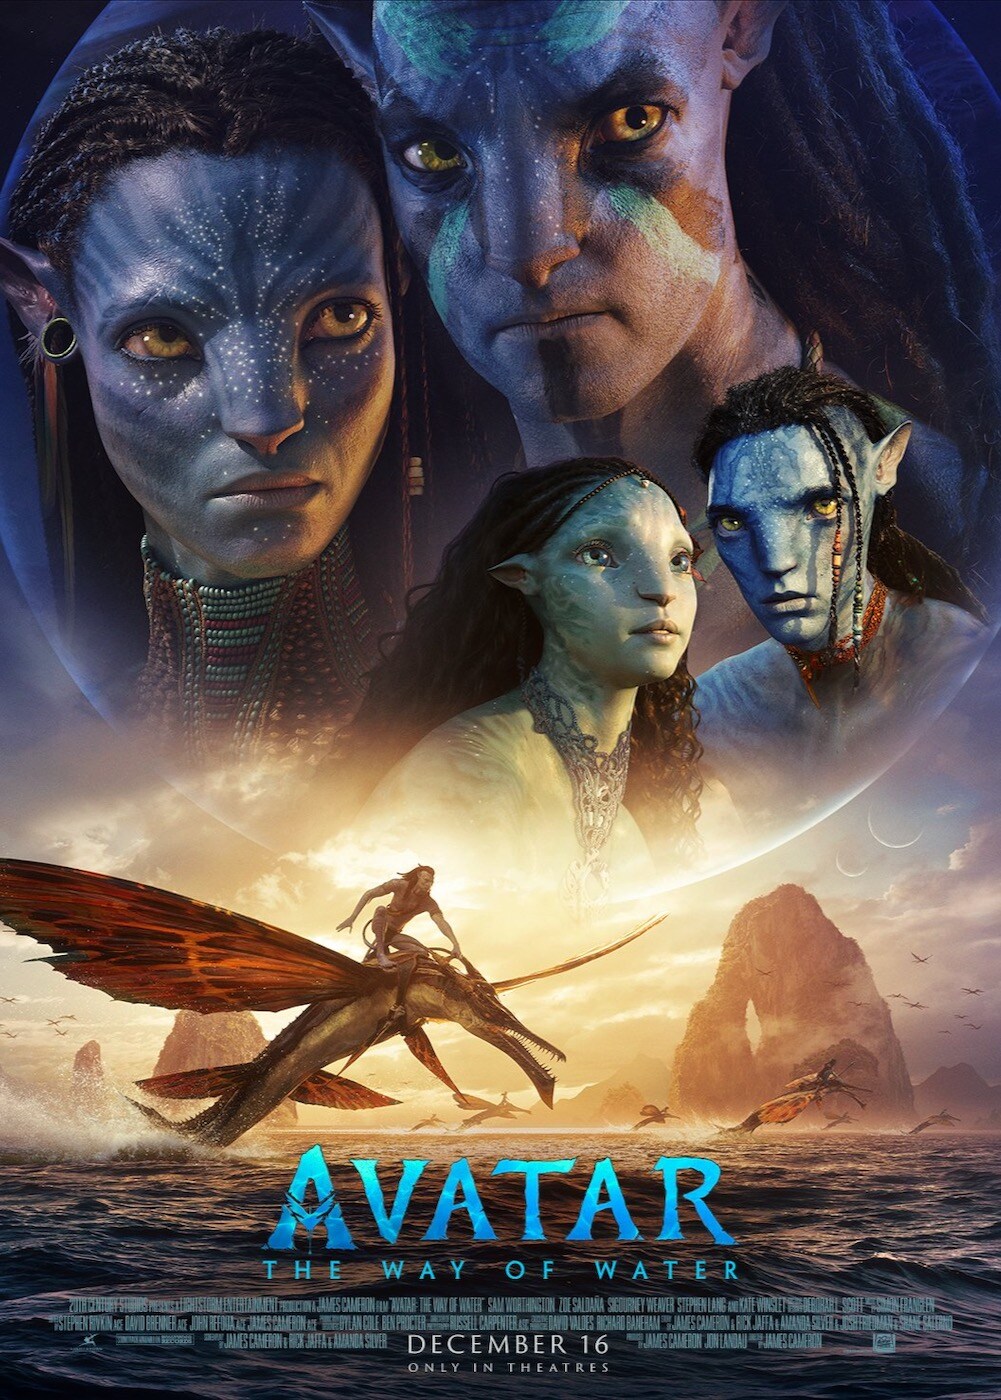 Avatar tamil dubbed movie 1080p download telegram